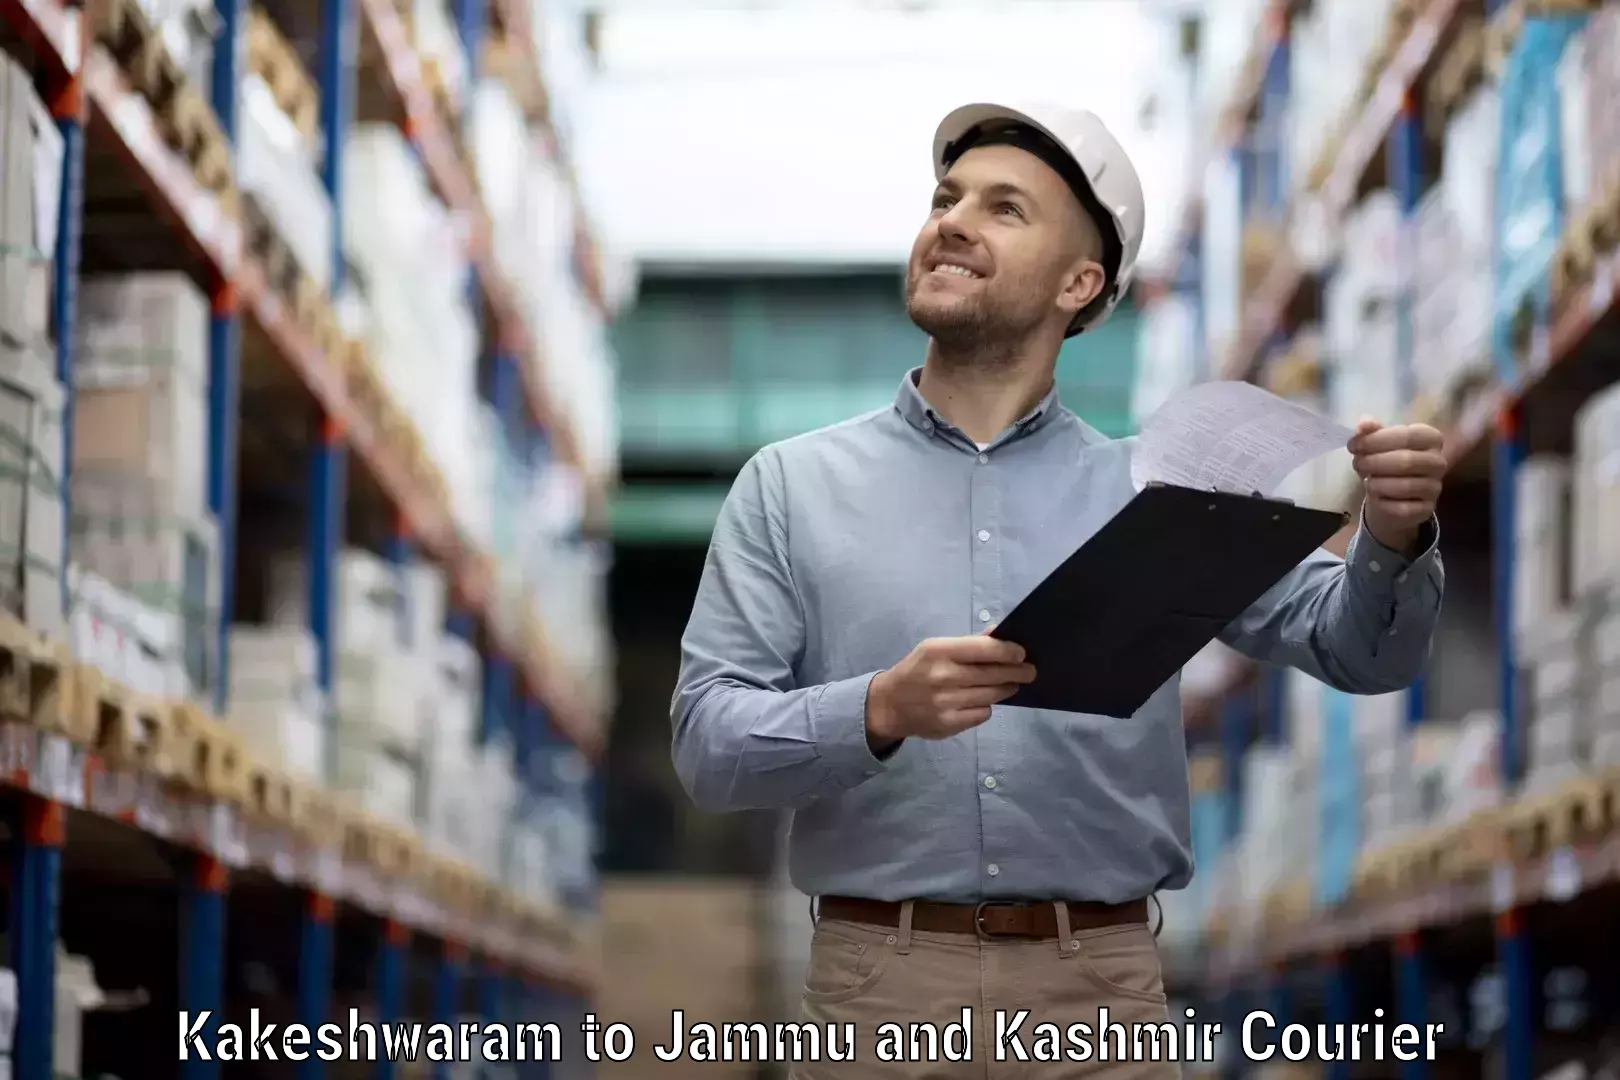 Courier service innovation Kakeshwaram to Kishtwar